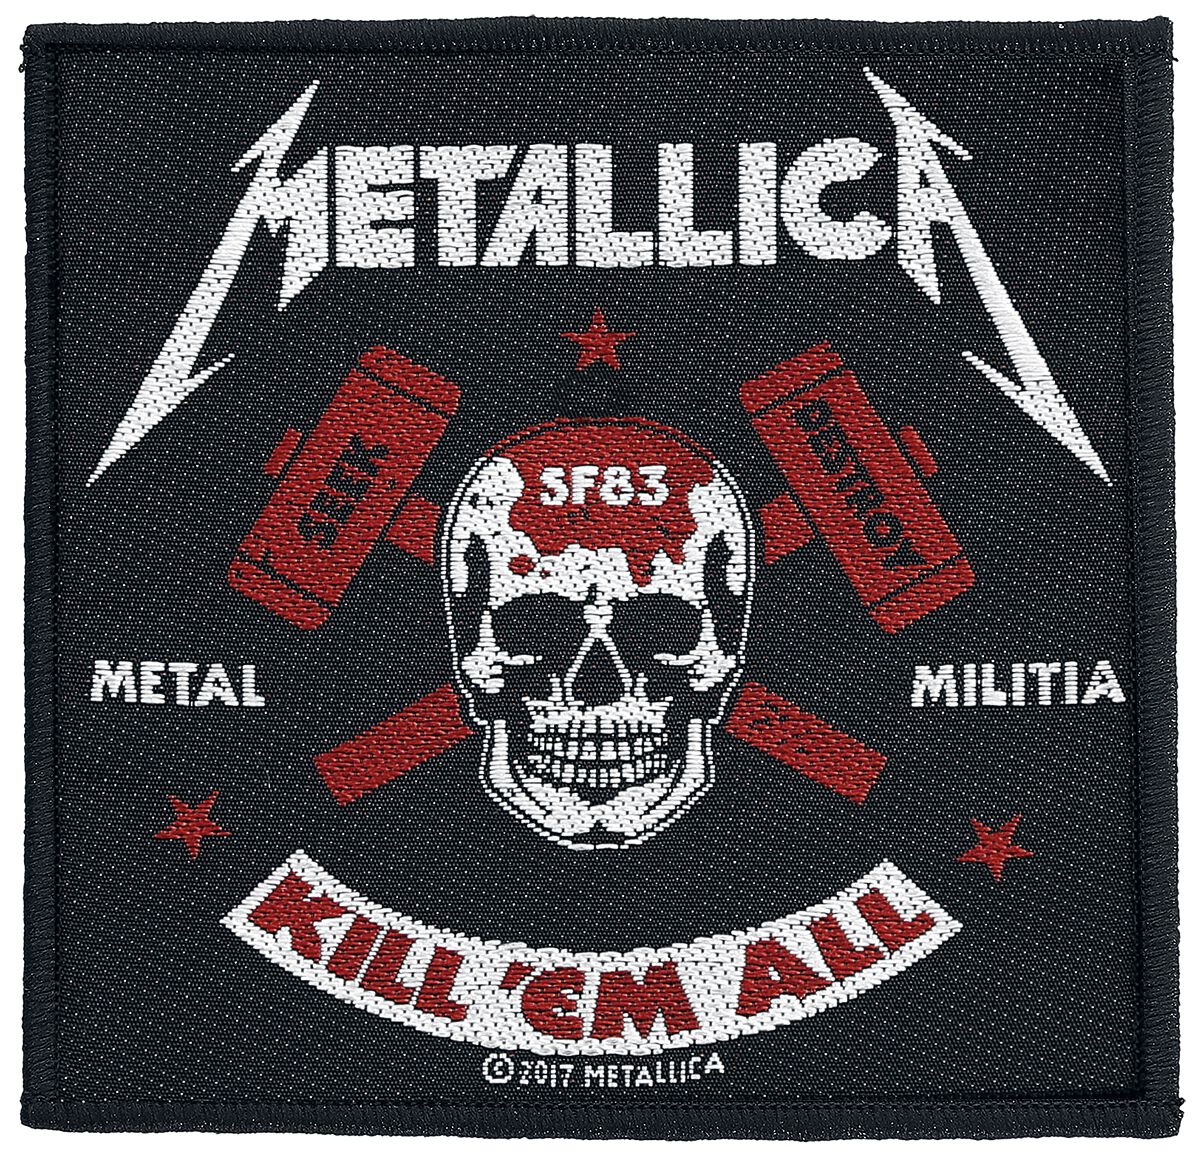 Metallica Metal Militia Patch schwarz rot weiß von metallica